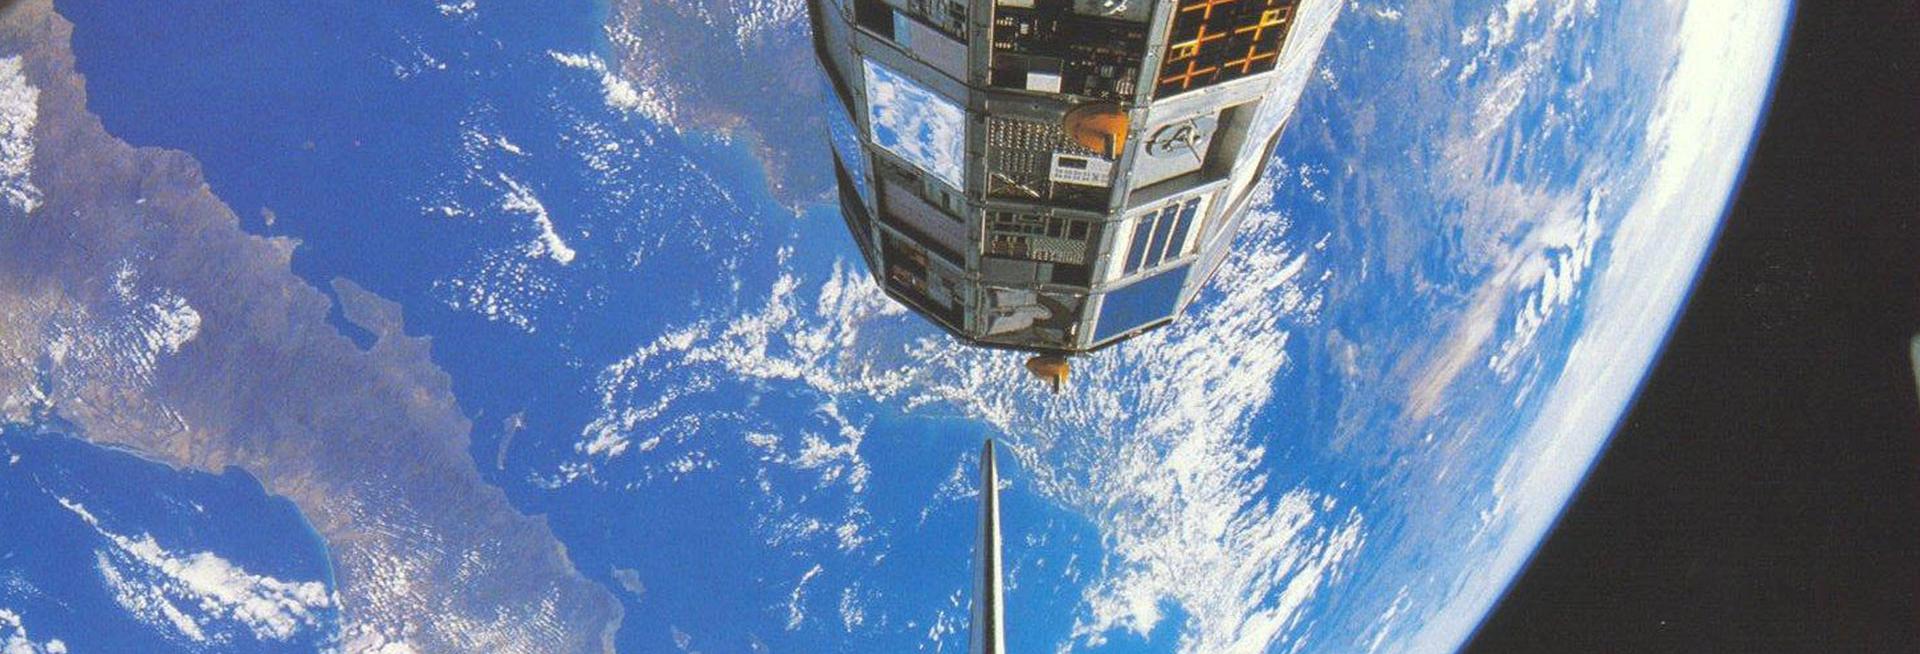 Shuttle deploying LDEF satellite